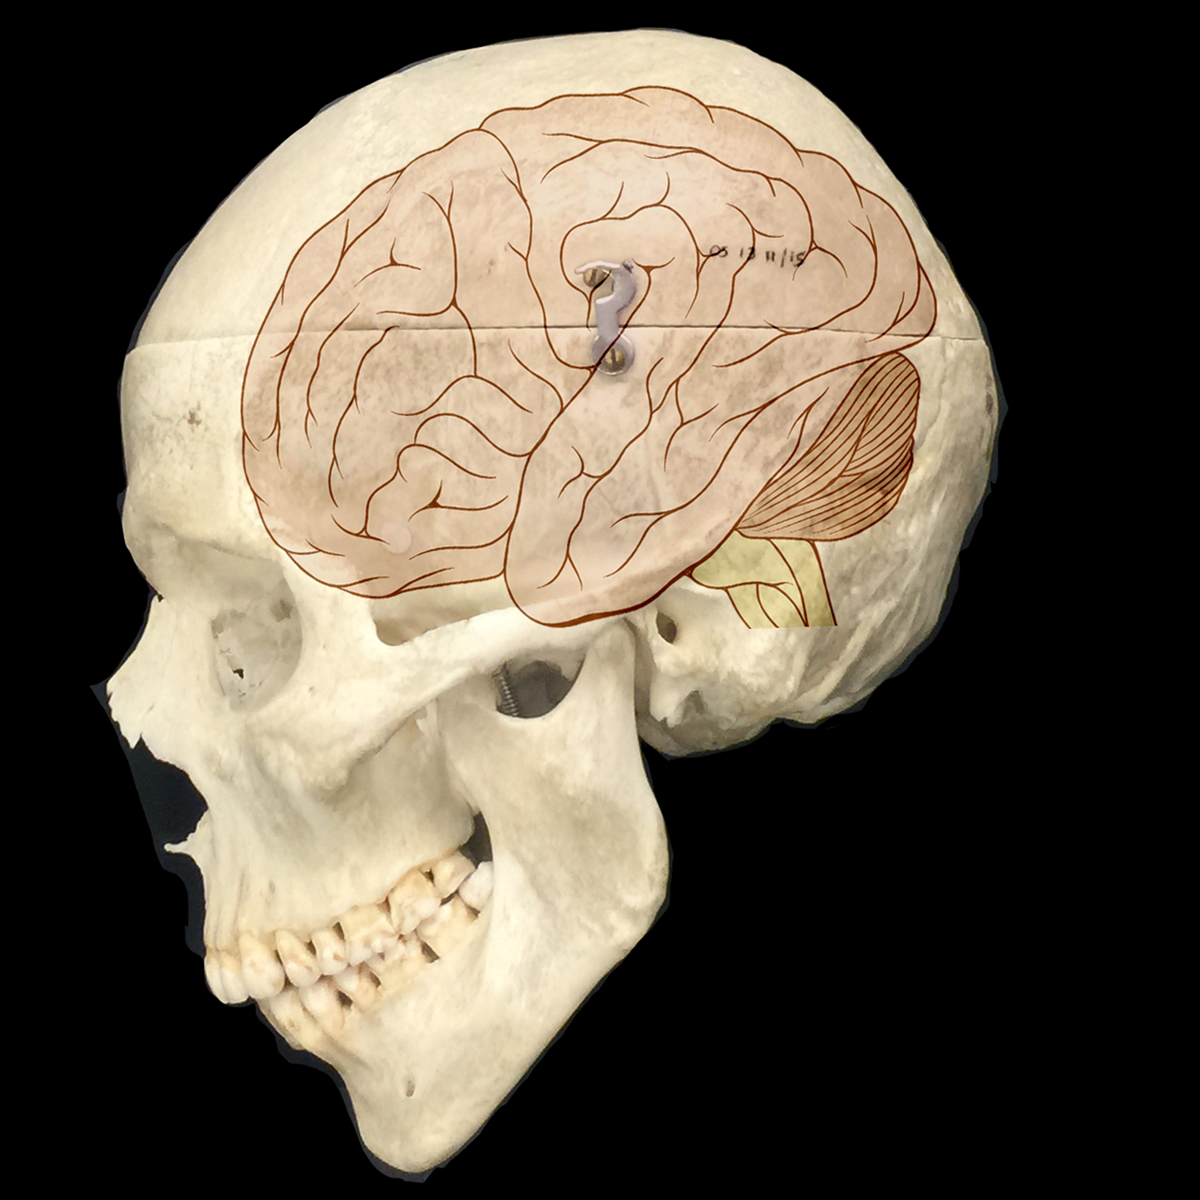 Large brain. Большой мозг. Головной мозг человека в черепе. Череп и мозг человека креативный.